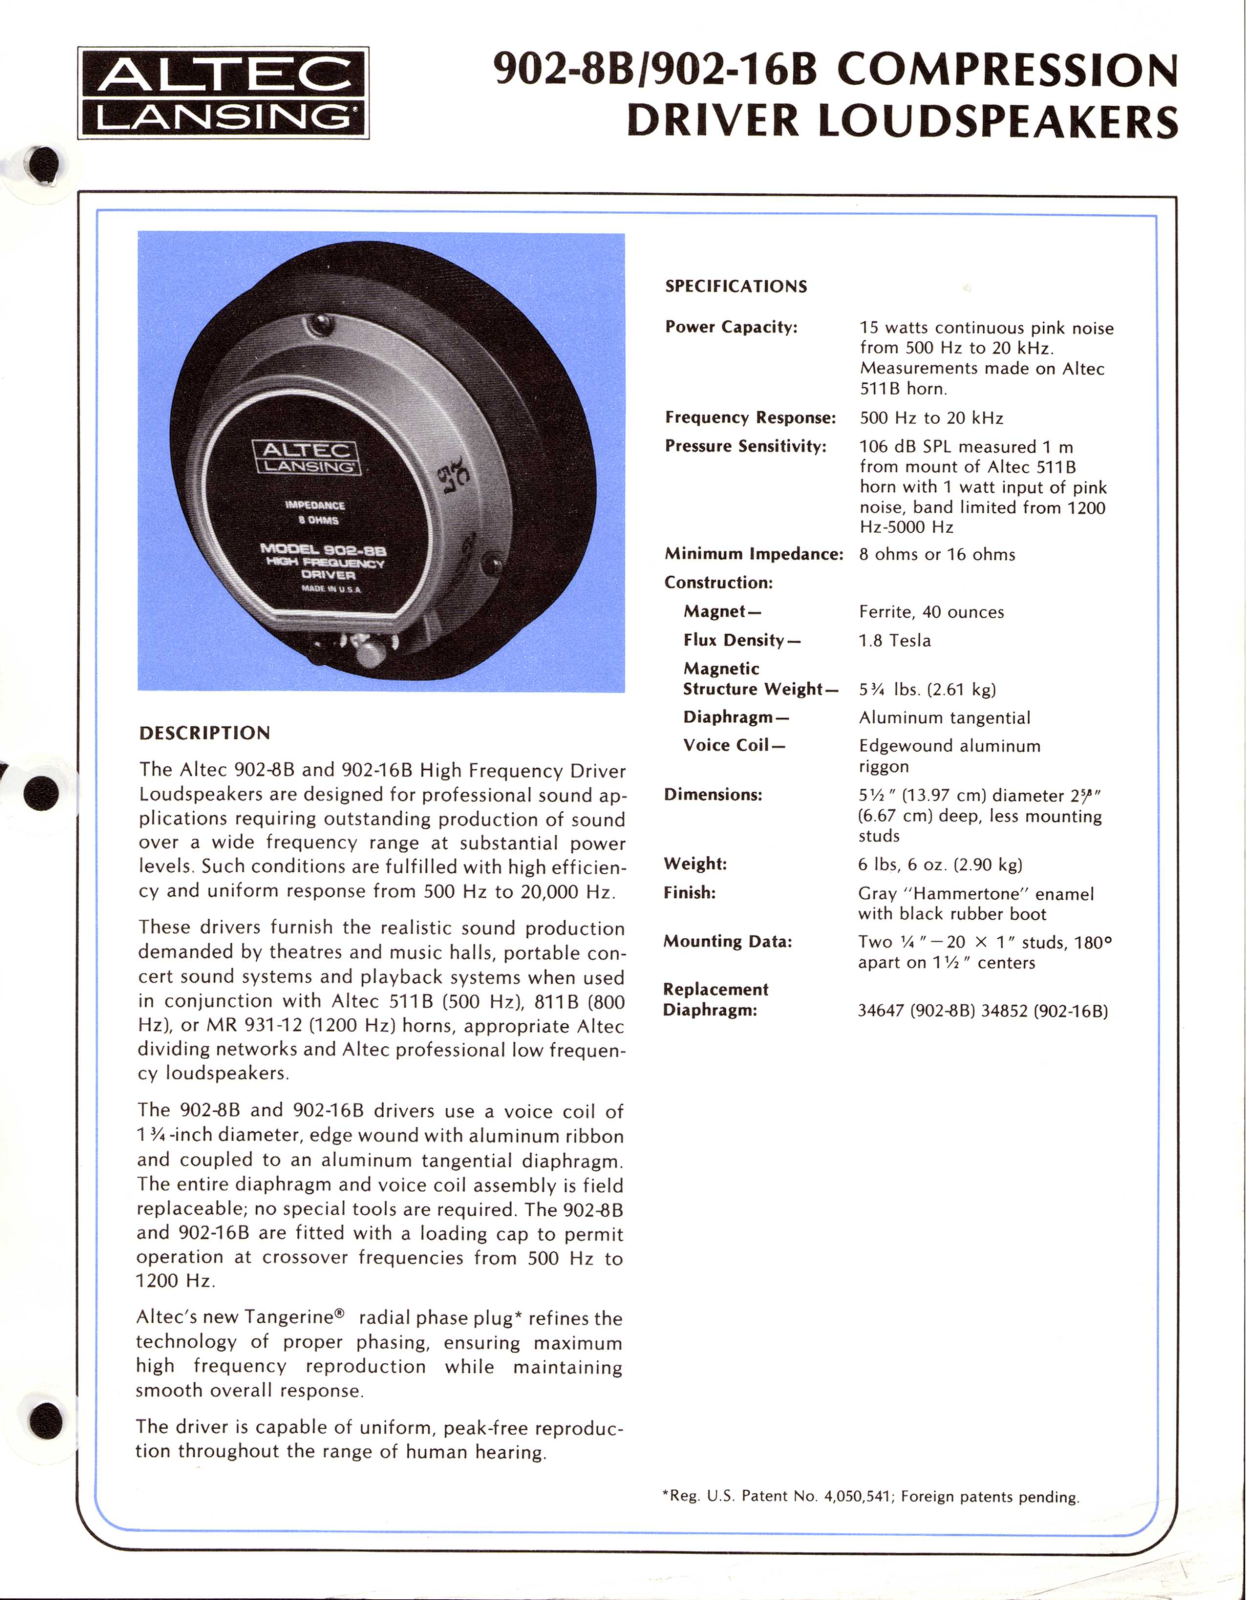 Altec lansing 902-16B, 902-8B User Manual